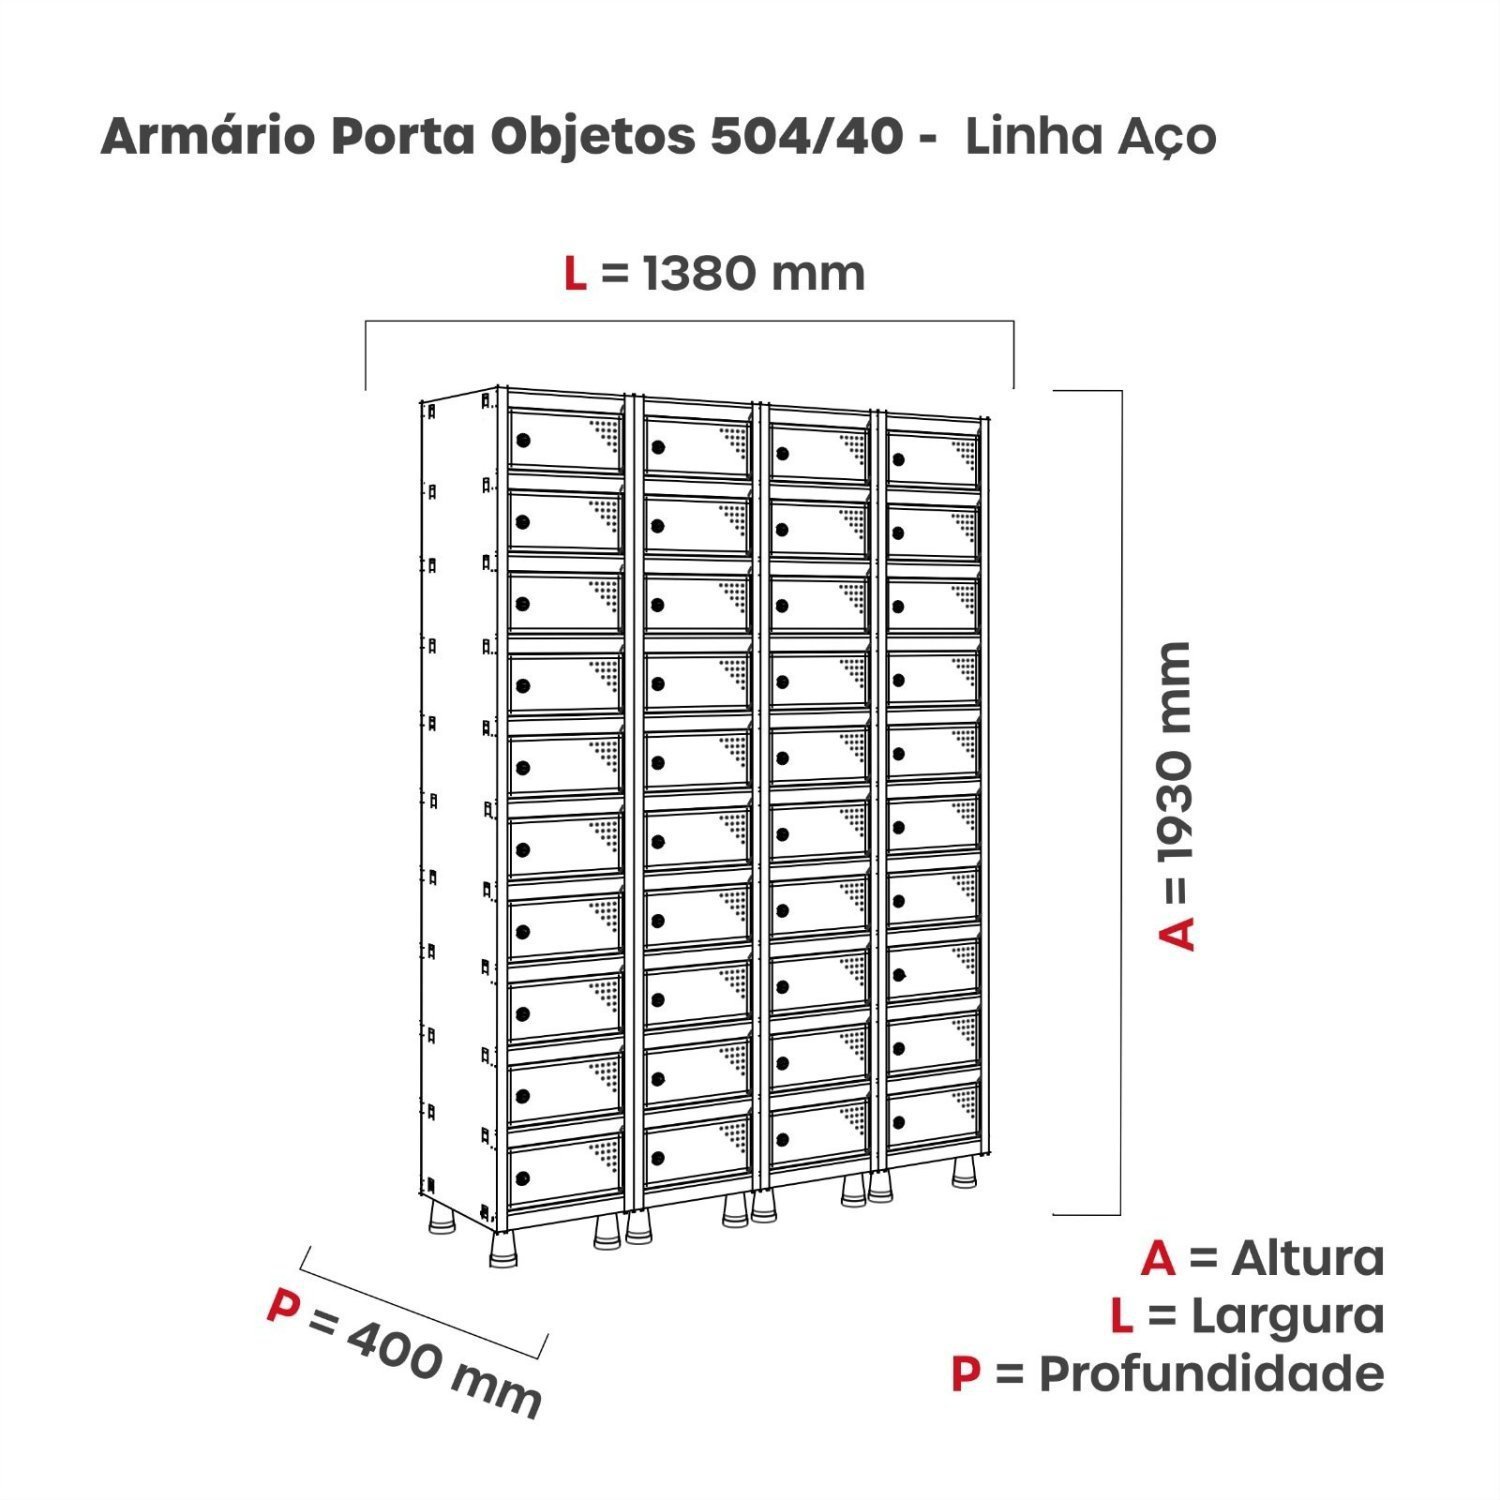 Armario Caixa Postal 40 Portas Aço ACPP 504/40  - 3